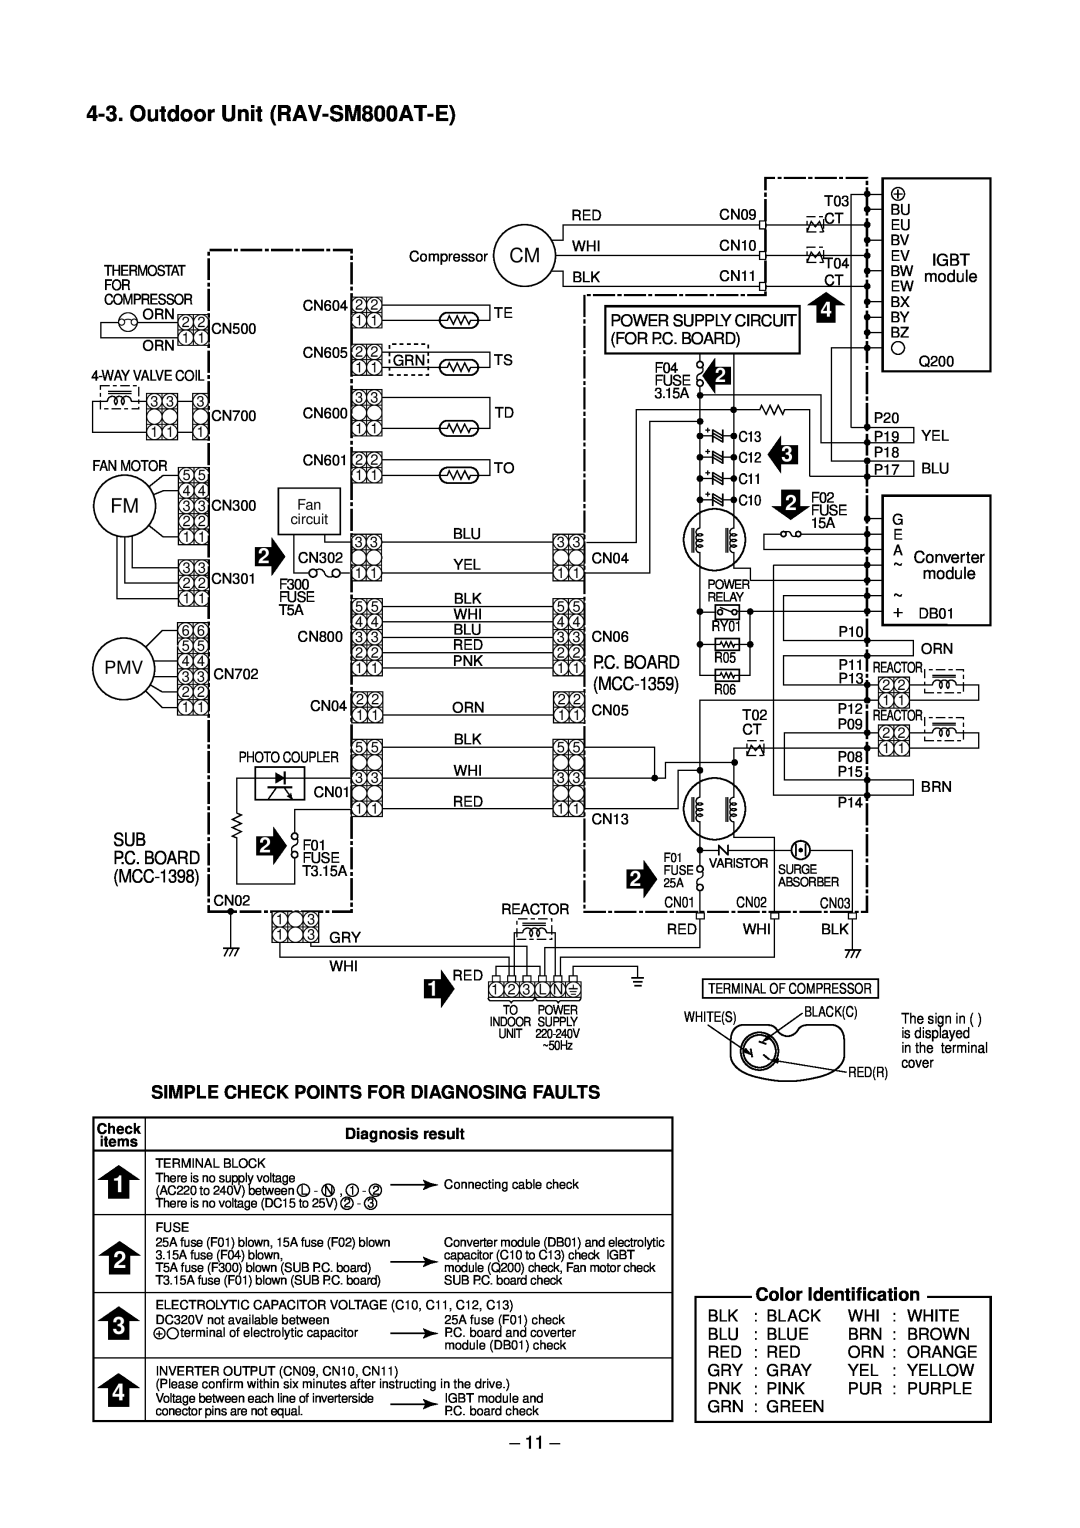 Toshiba RAV-SM560XT-E, RAV-SM800XT-E service manual Outdoor Unit RAV-SM800AT-E 